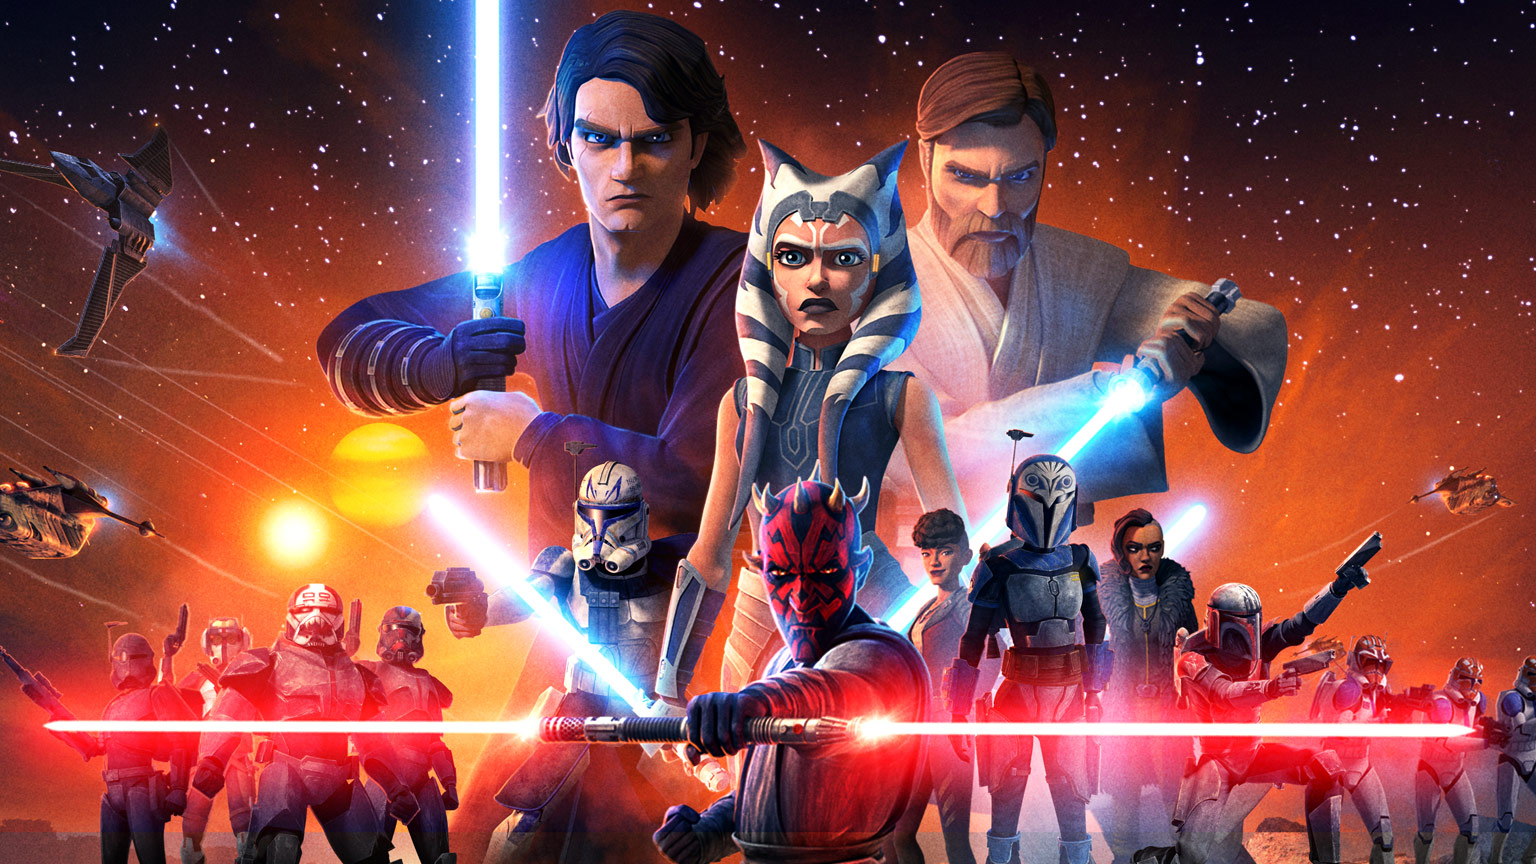 Star Wars: in arrivo una nuova serie TV animata? La notizia che tutti i fan stavano aspettando